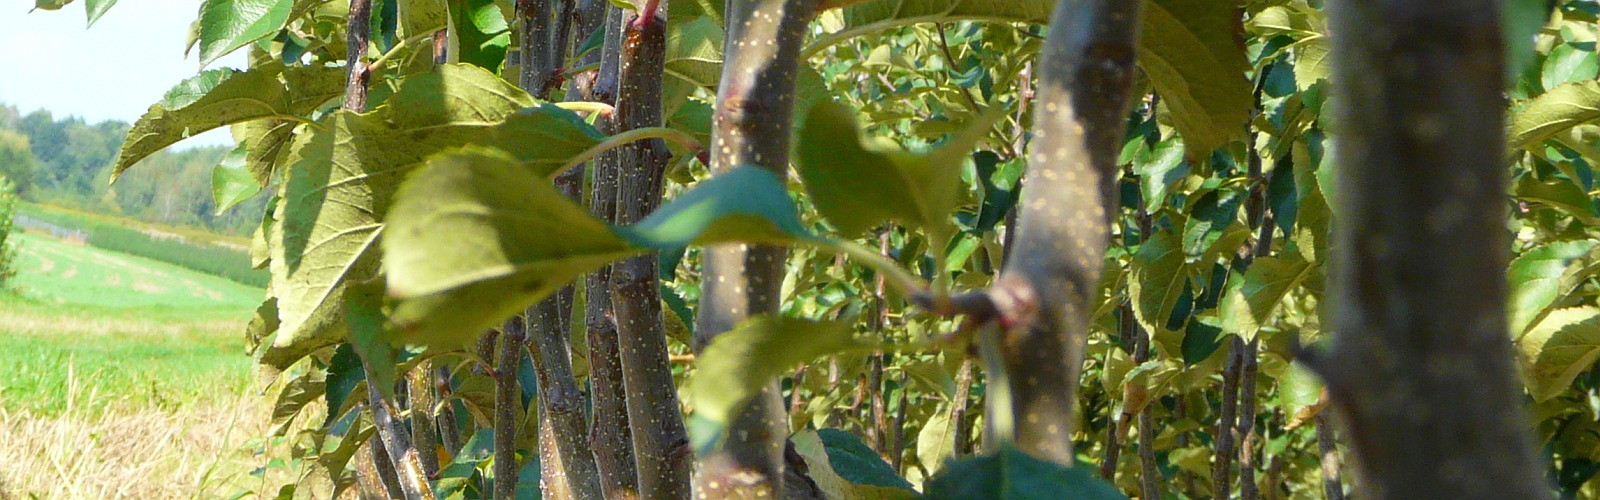 Vivaio di alberi da frutto meli peri susini Polonia